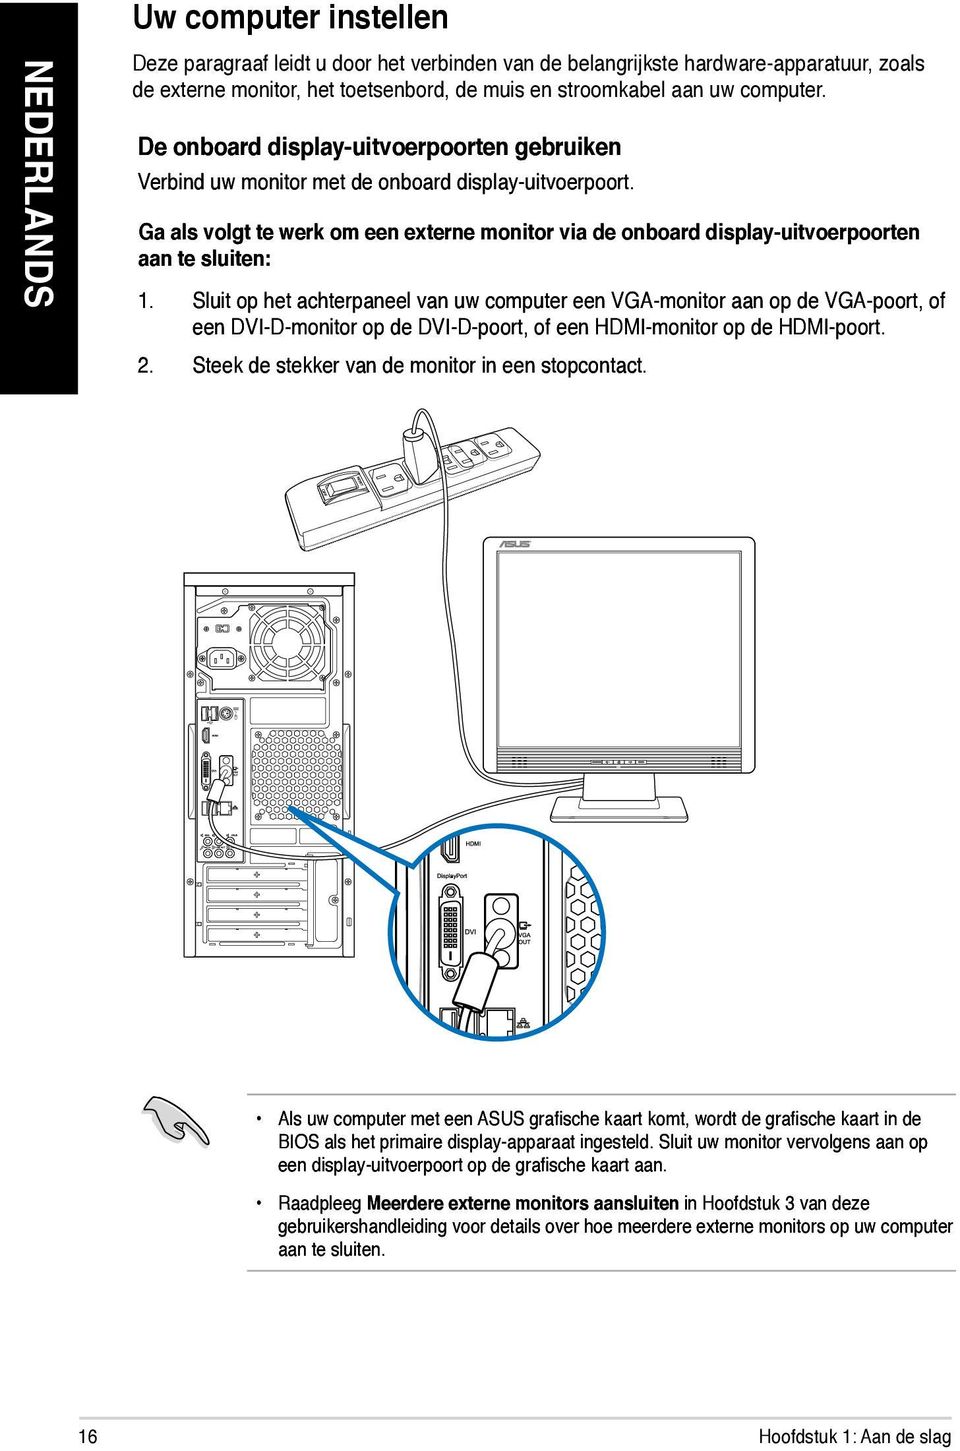 Sluit op het achterpaneel van uw computer een VGA-monitor aan op de VGA-poort, of een DVI-D-monitor op de DVI-D-poort, of een HDMI-monitor op de HDMI-poort. 2.